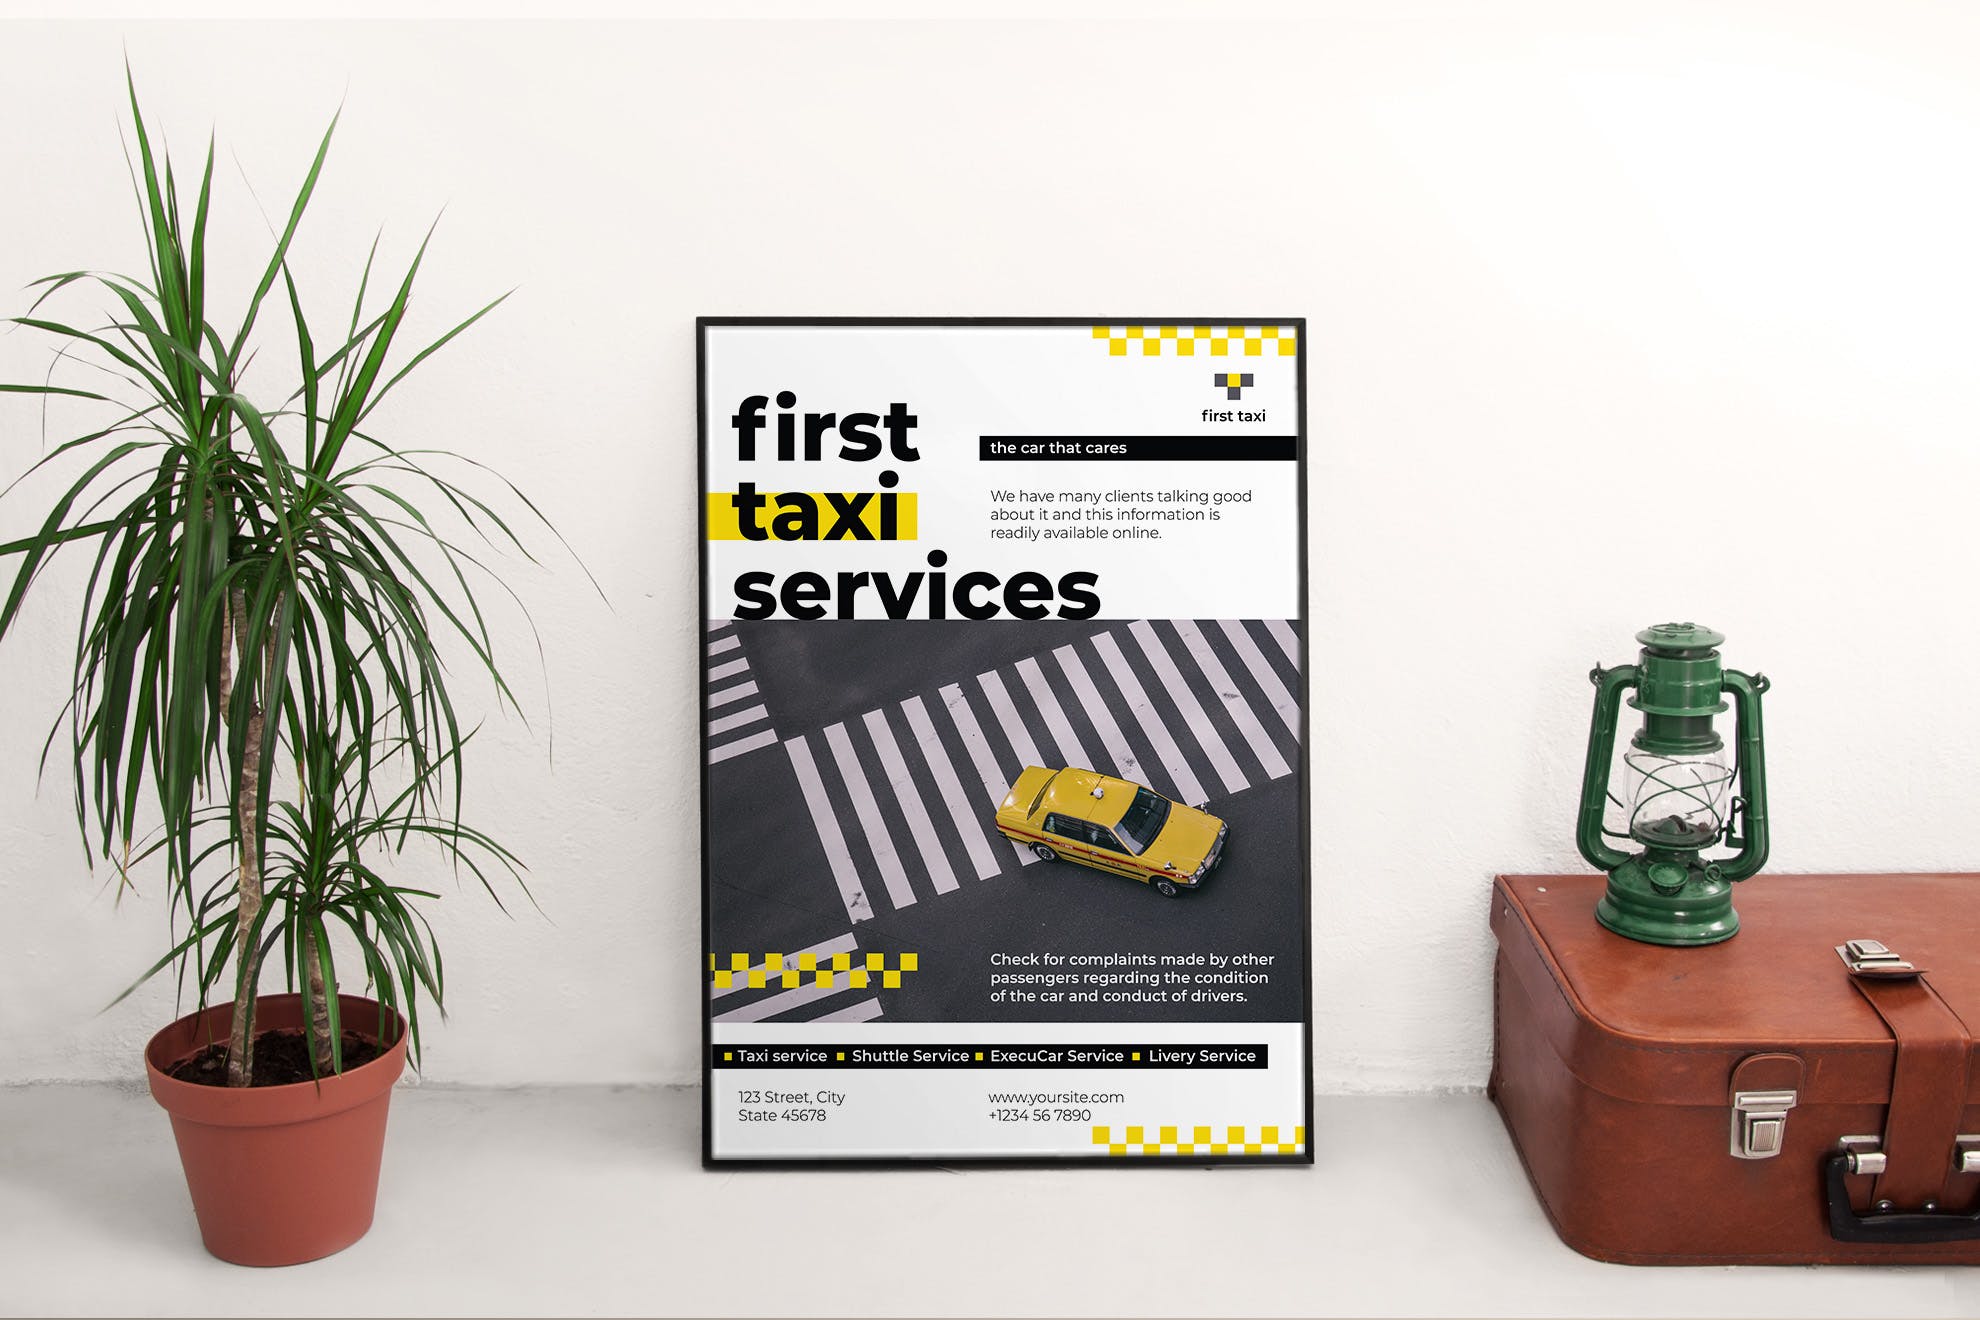 出租车/网约车公司宣传海报设计模板 Taxi Services Poster插图(2)